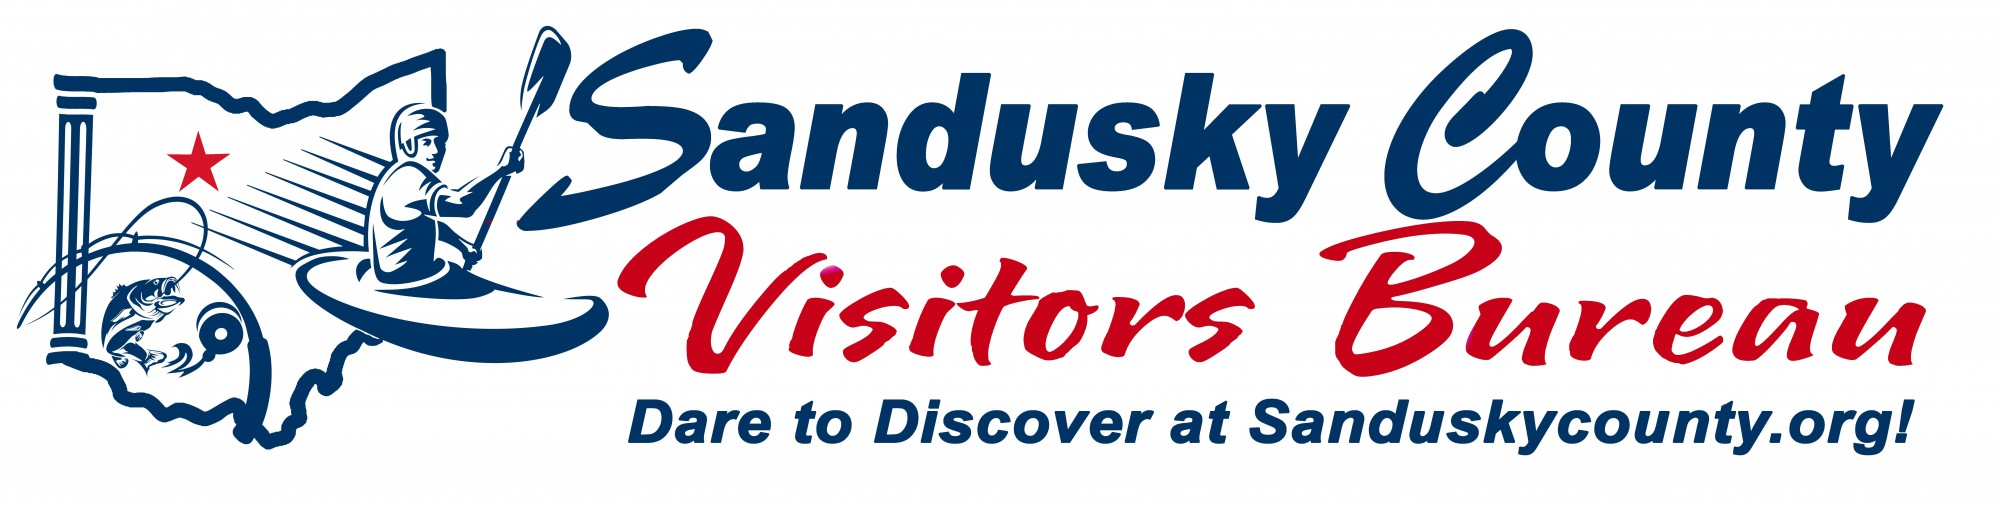 Sandusky Co. Visitors Bureau